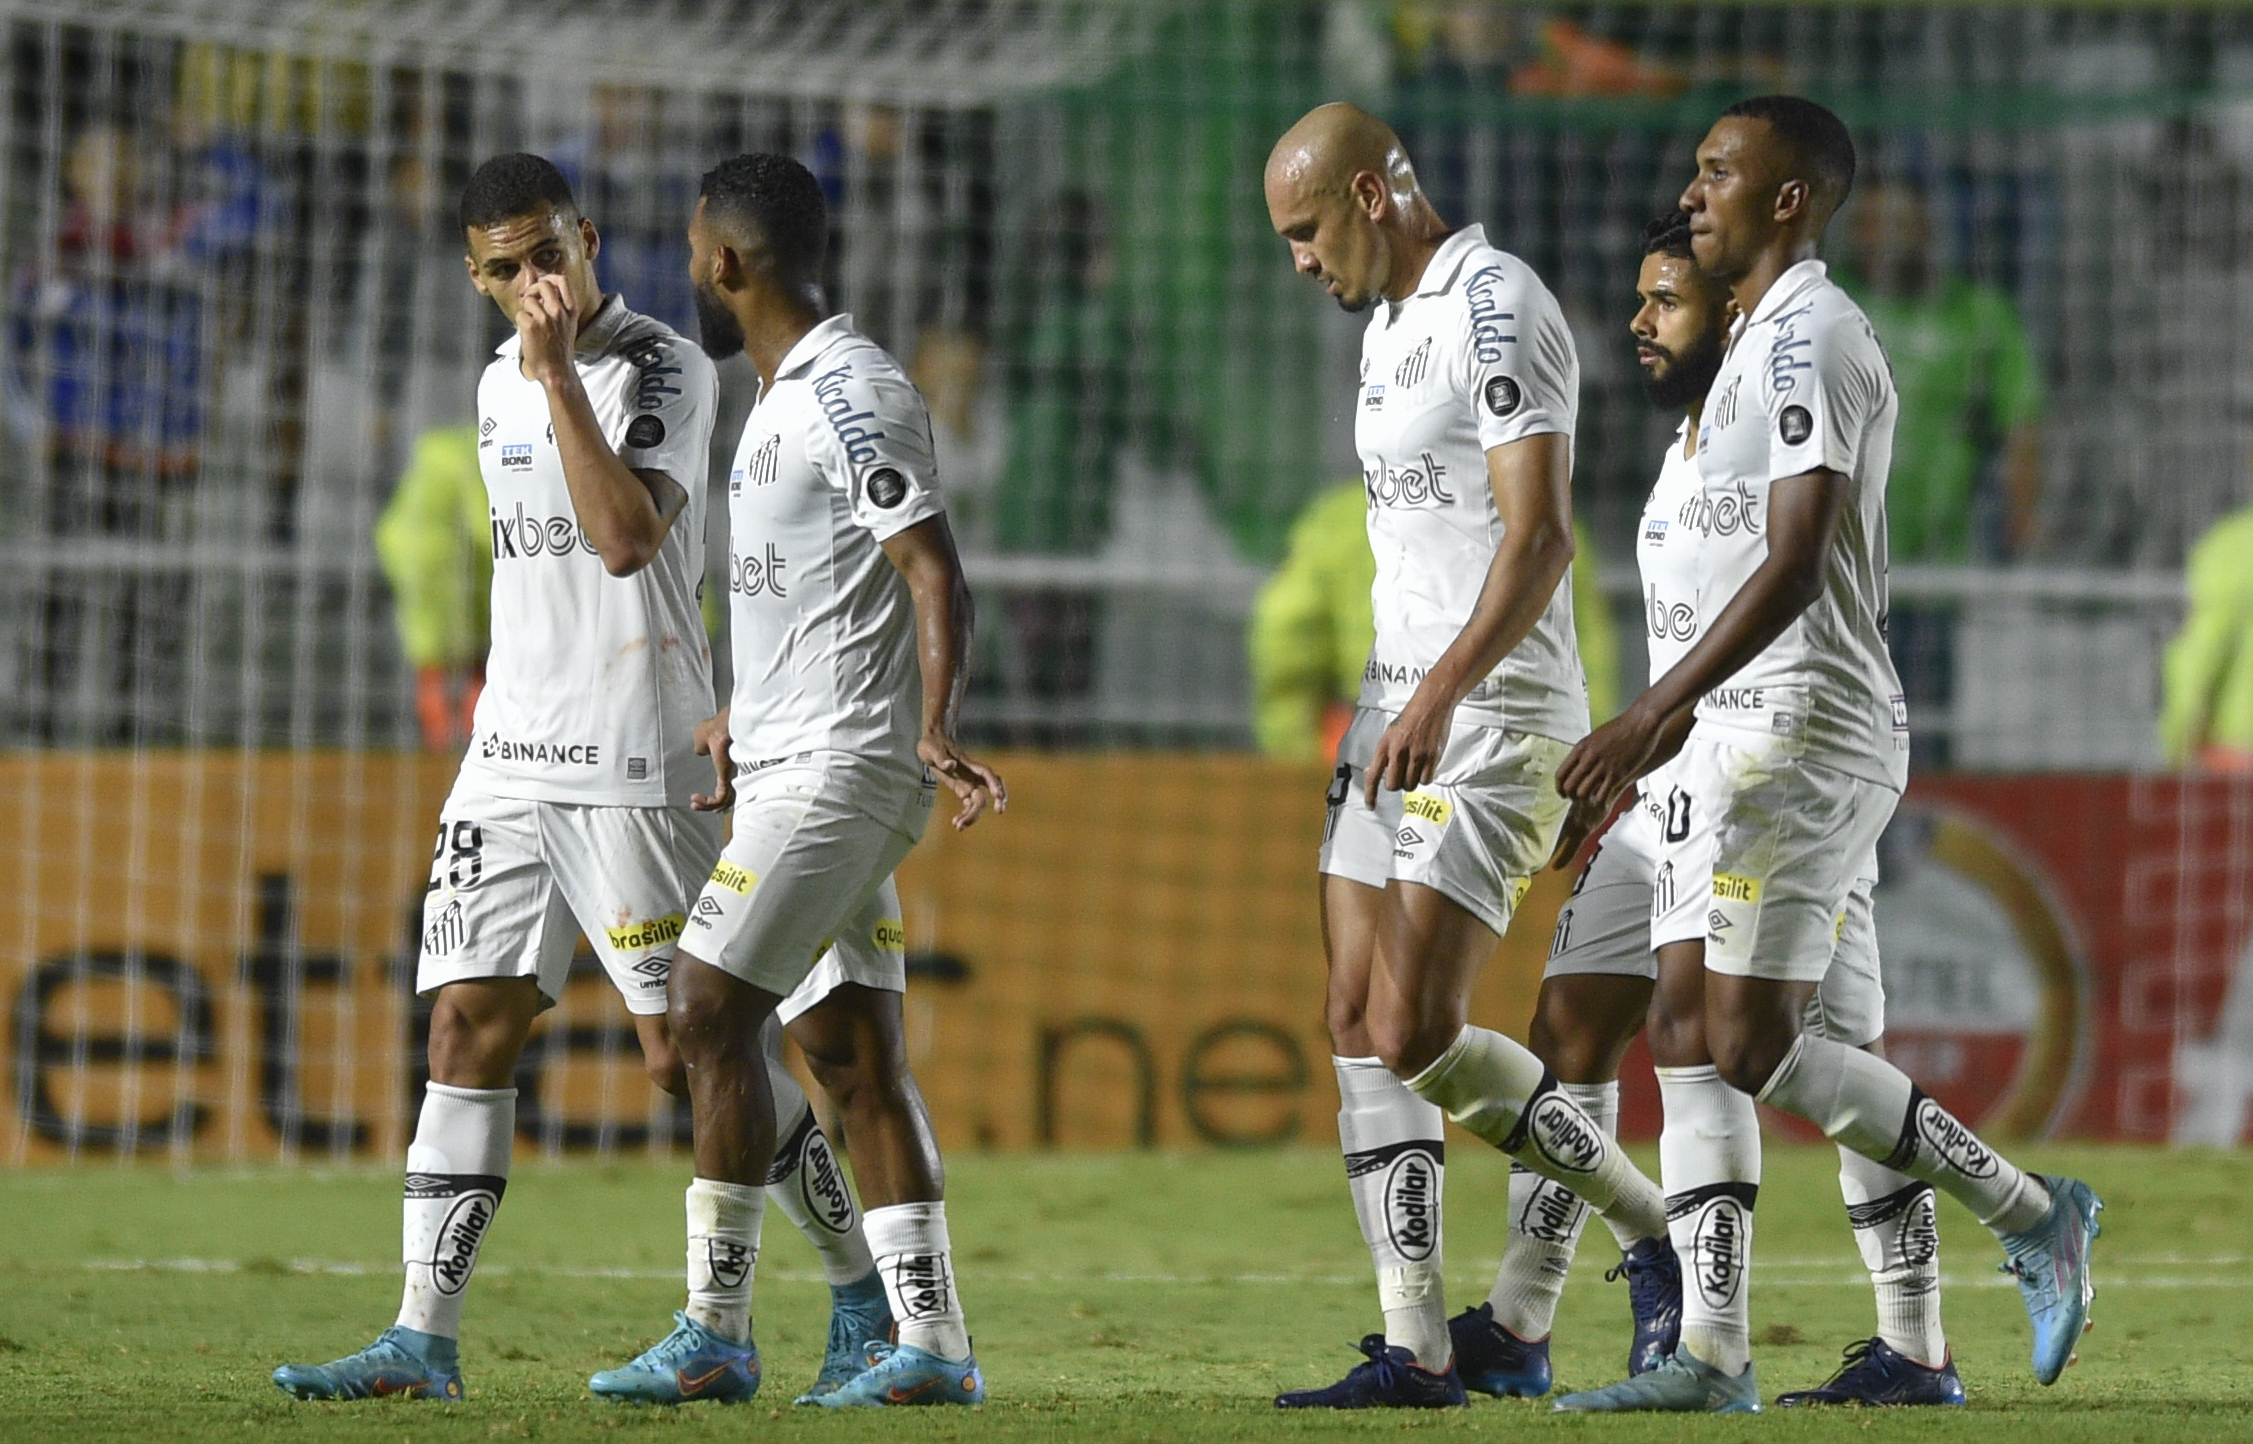 Santos vs Vasco da Gama: Match Report